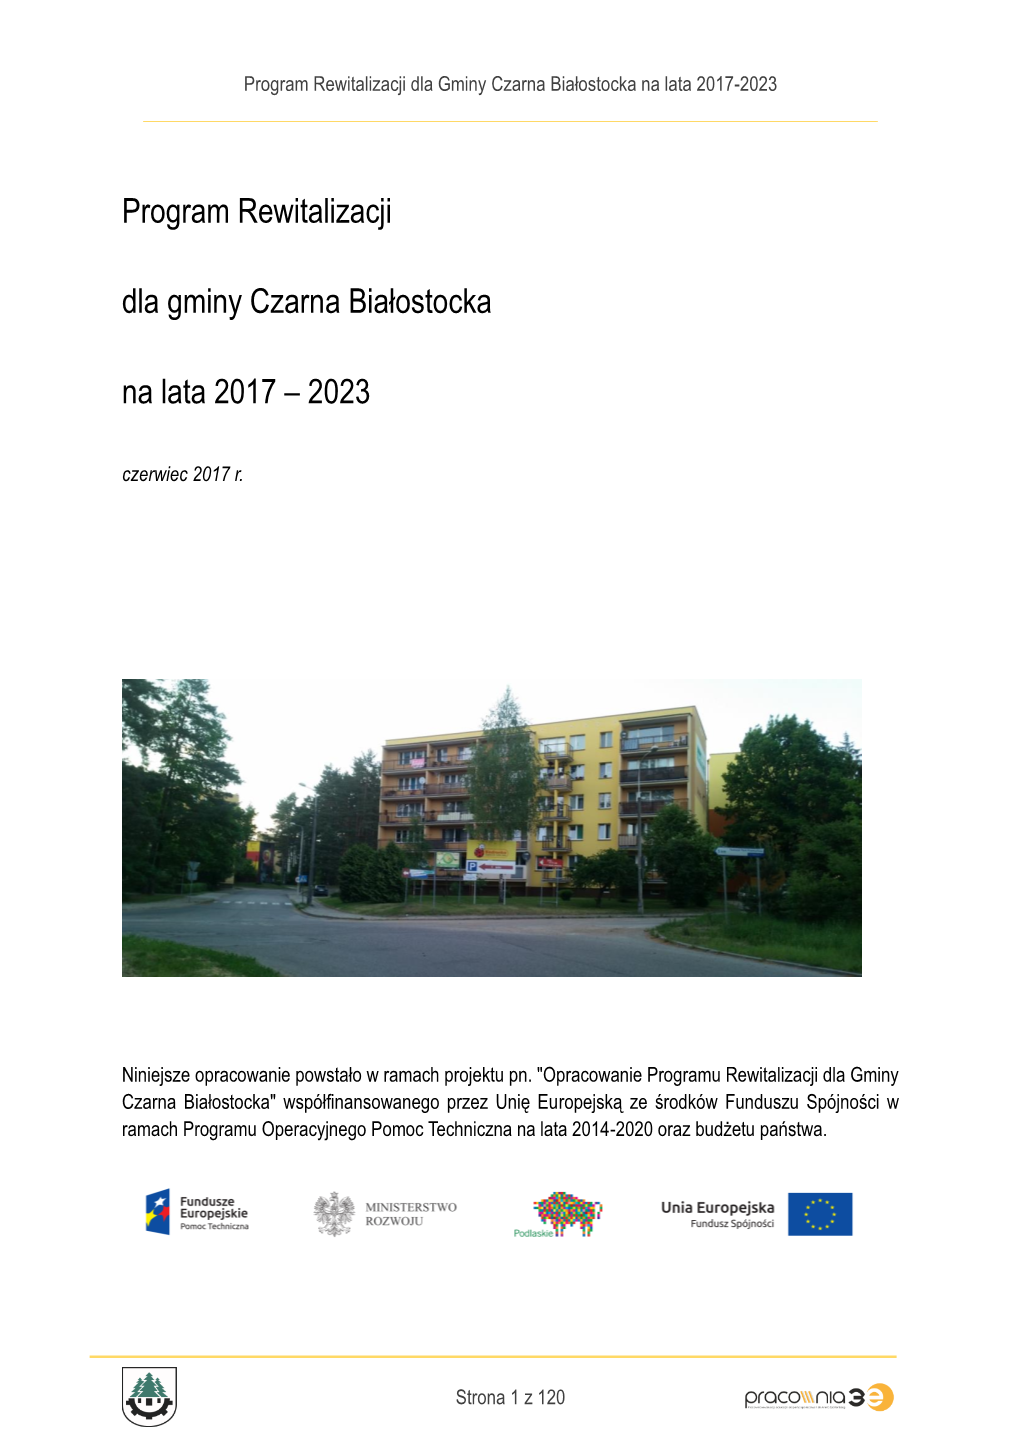 Program Rewitalizacji Dla Gminy Czarna Białostocka Na Lata 2017-2023